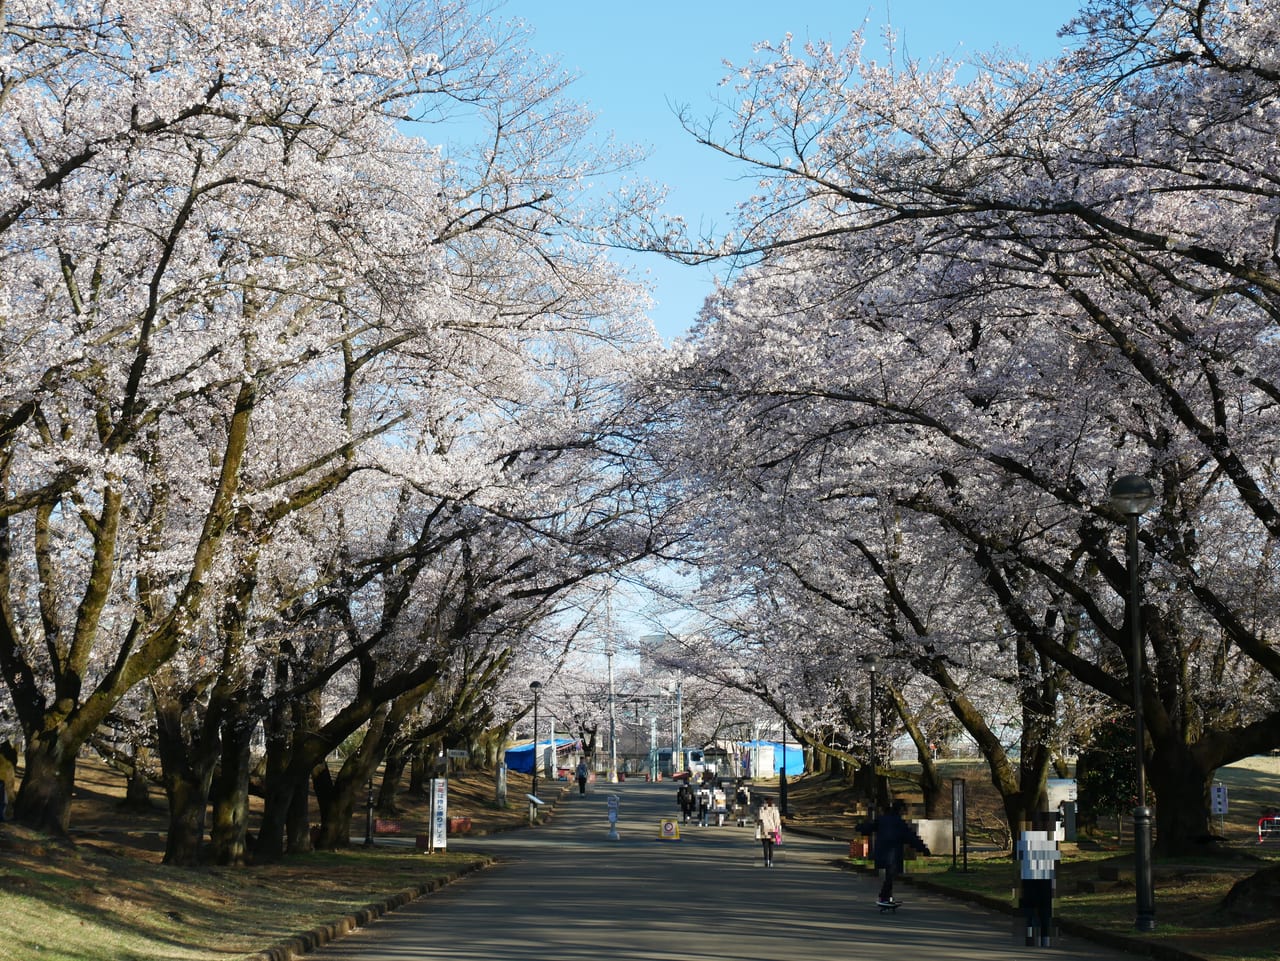 狭山市 3月24日は8分咲き 狭山稲荷山公園で桜が開花していますよ 号外net 狭山市 入間市